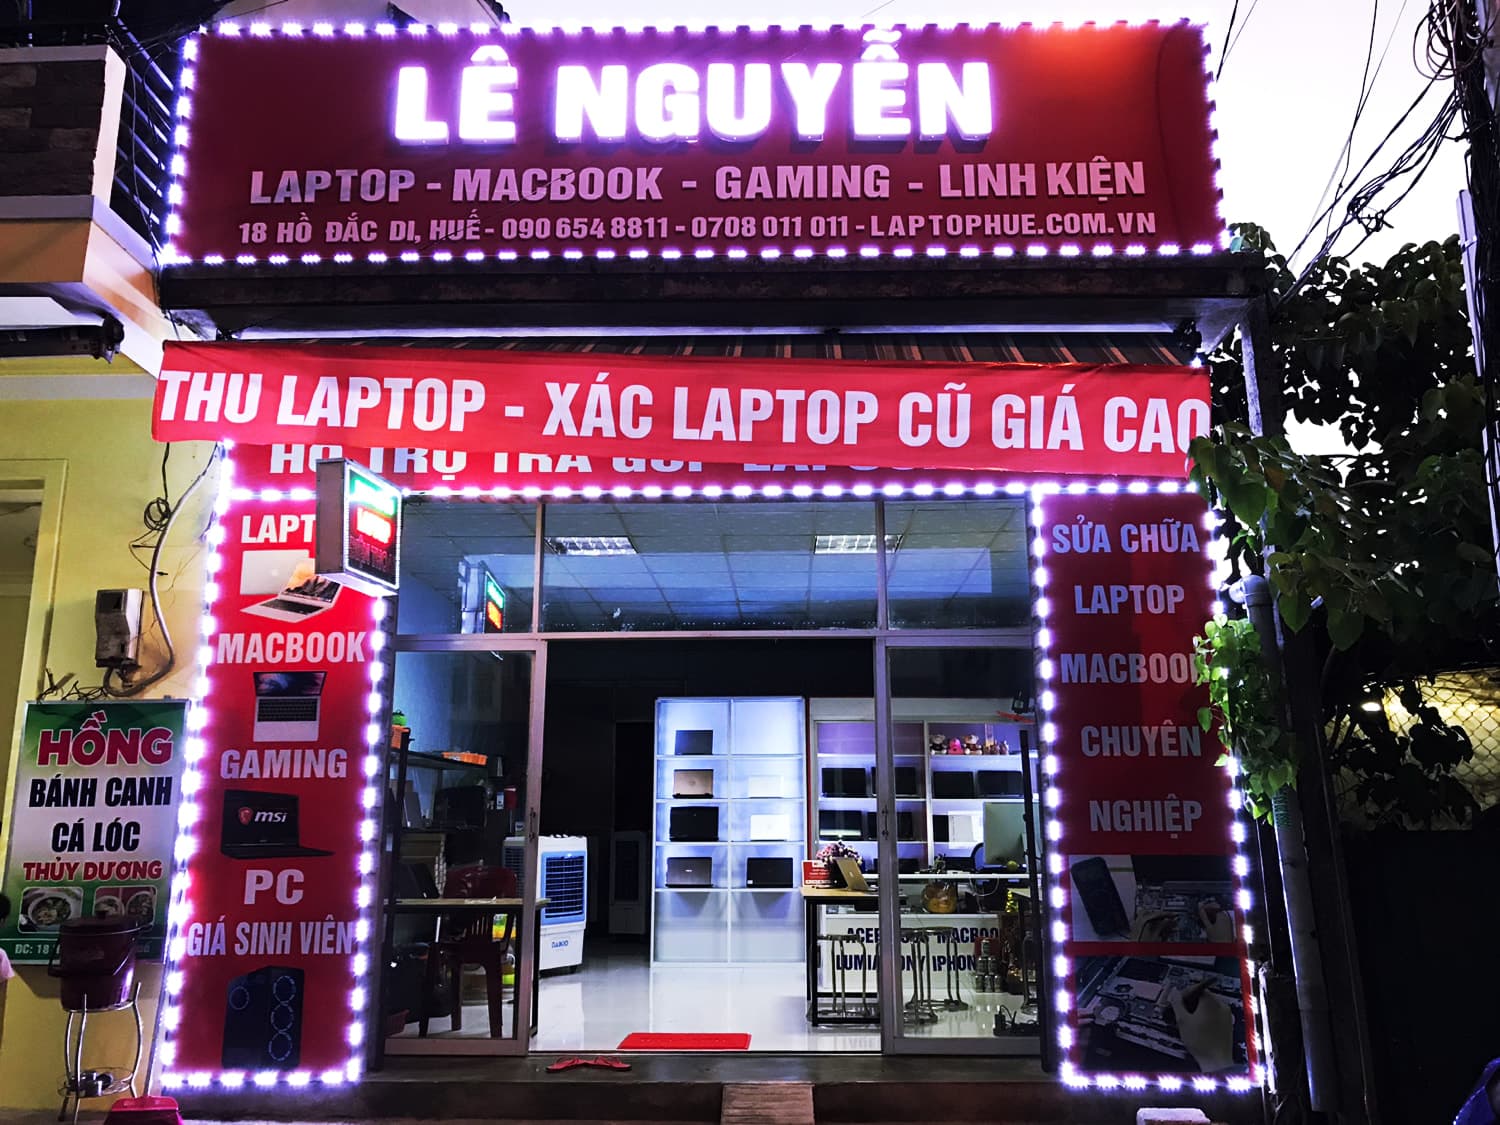 Laptop Tại Huế - Lê Nguyễn Laptop - Laptophue.Com.Vn ảnh 1